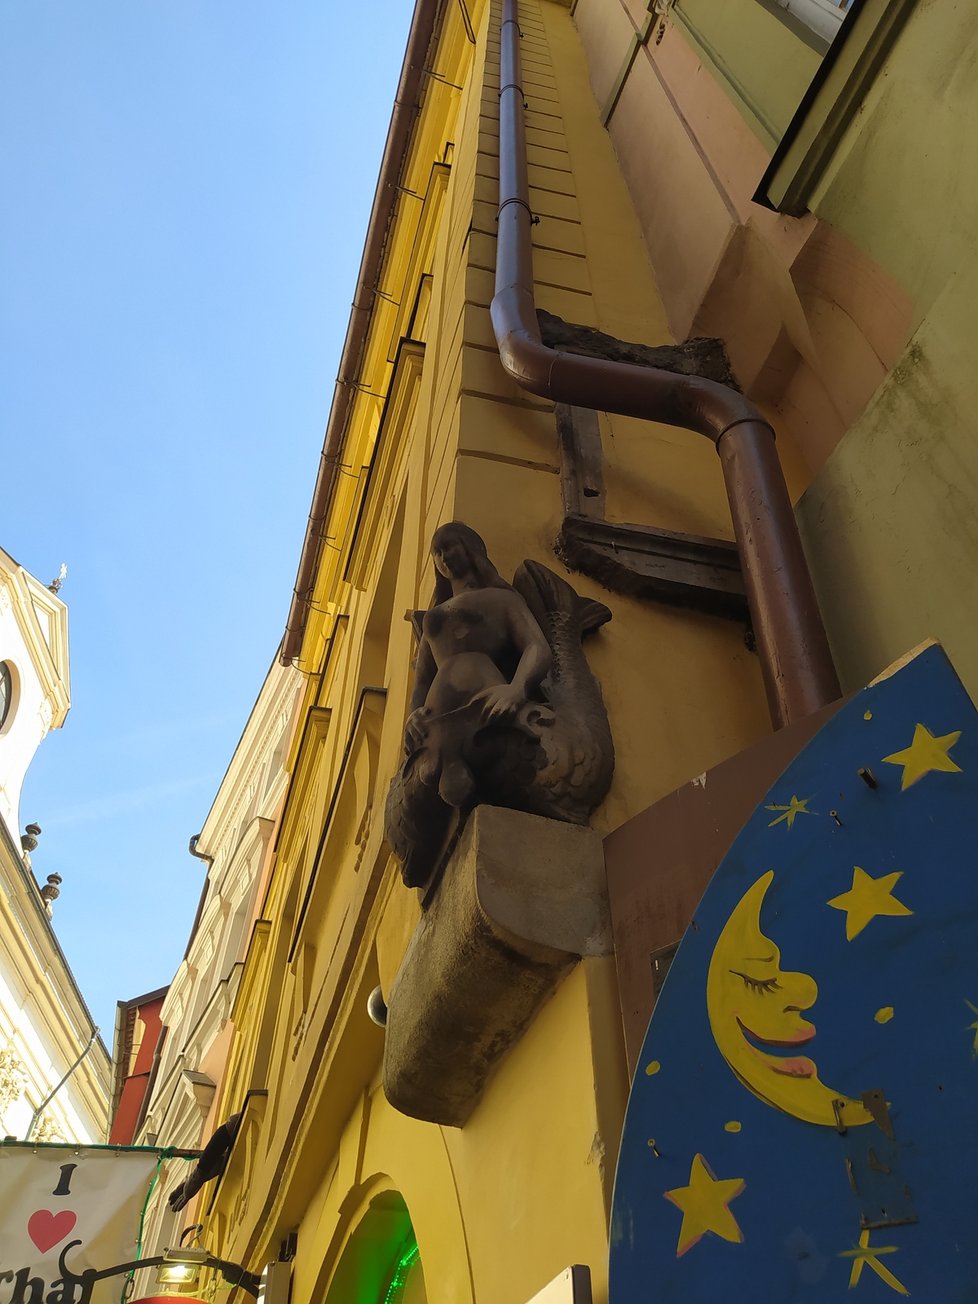 Dům U Kamenné mořské panny se nachází v Karlově ulici nedaleko Karlova mostu.